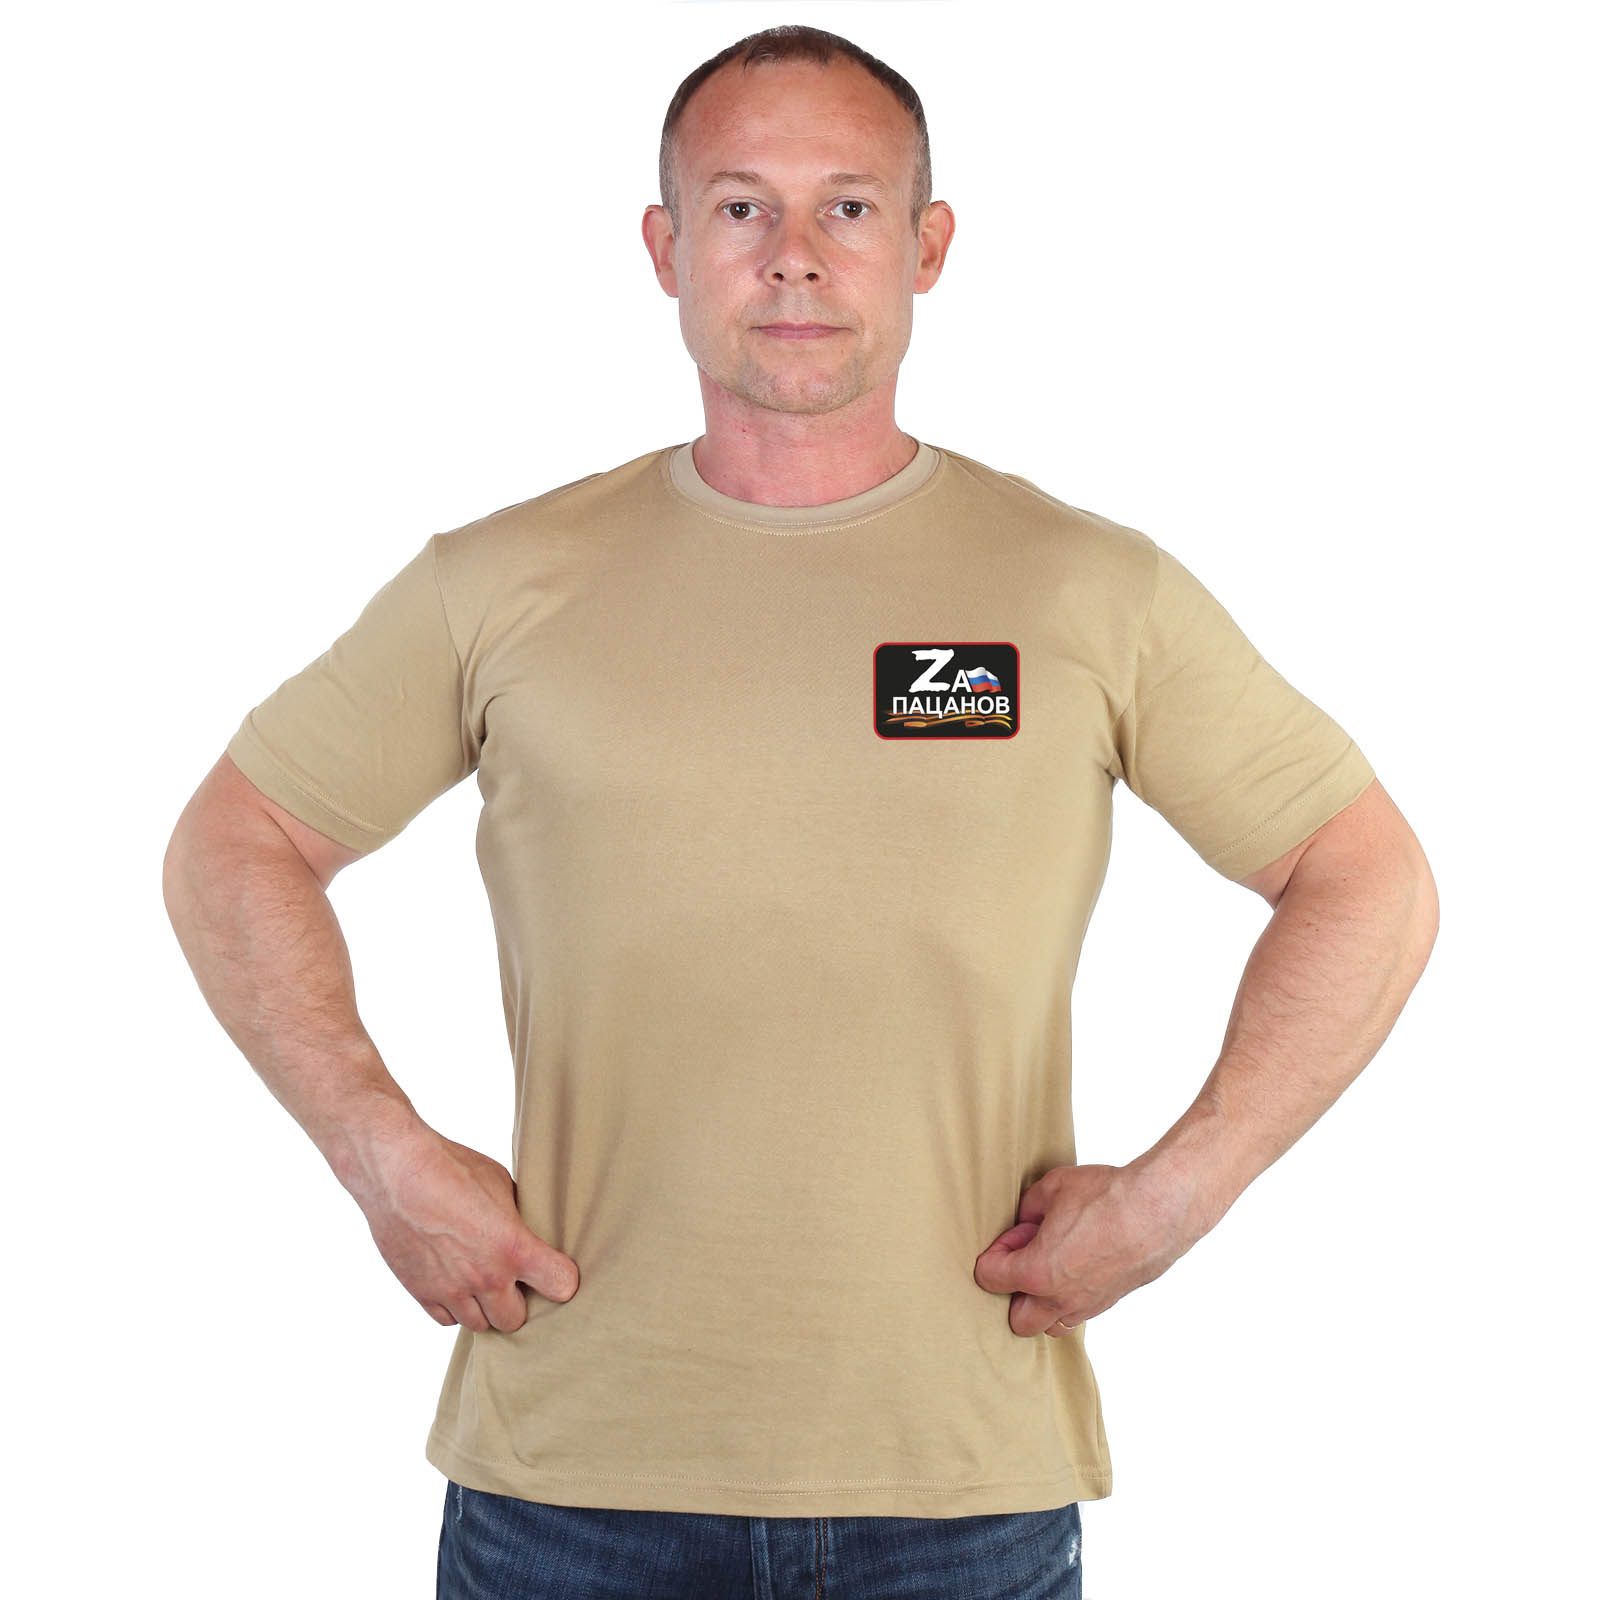 Песочная футболка с термотрансфером "Zа пацанов"